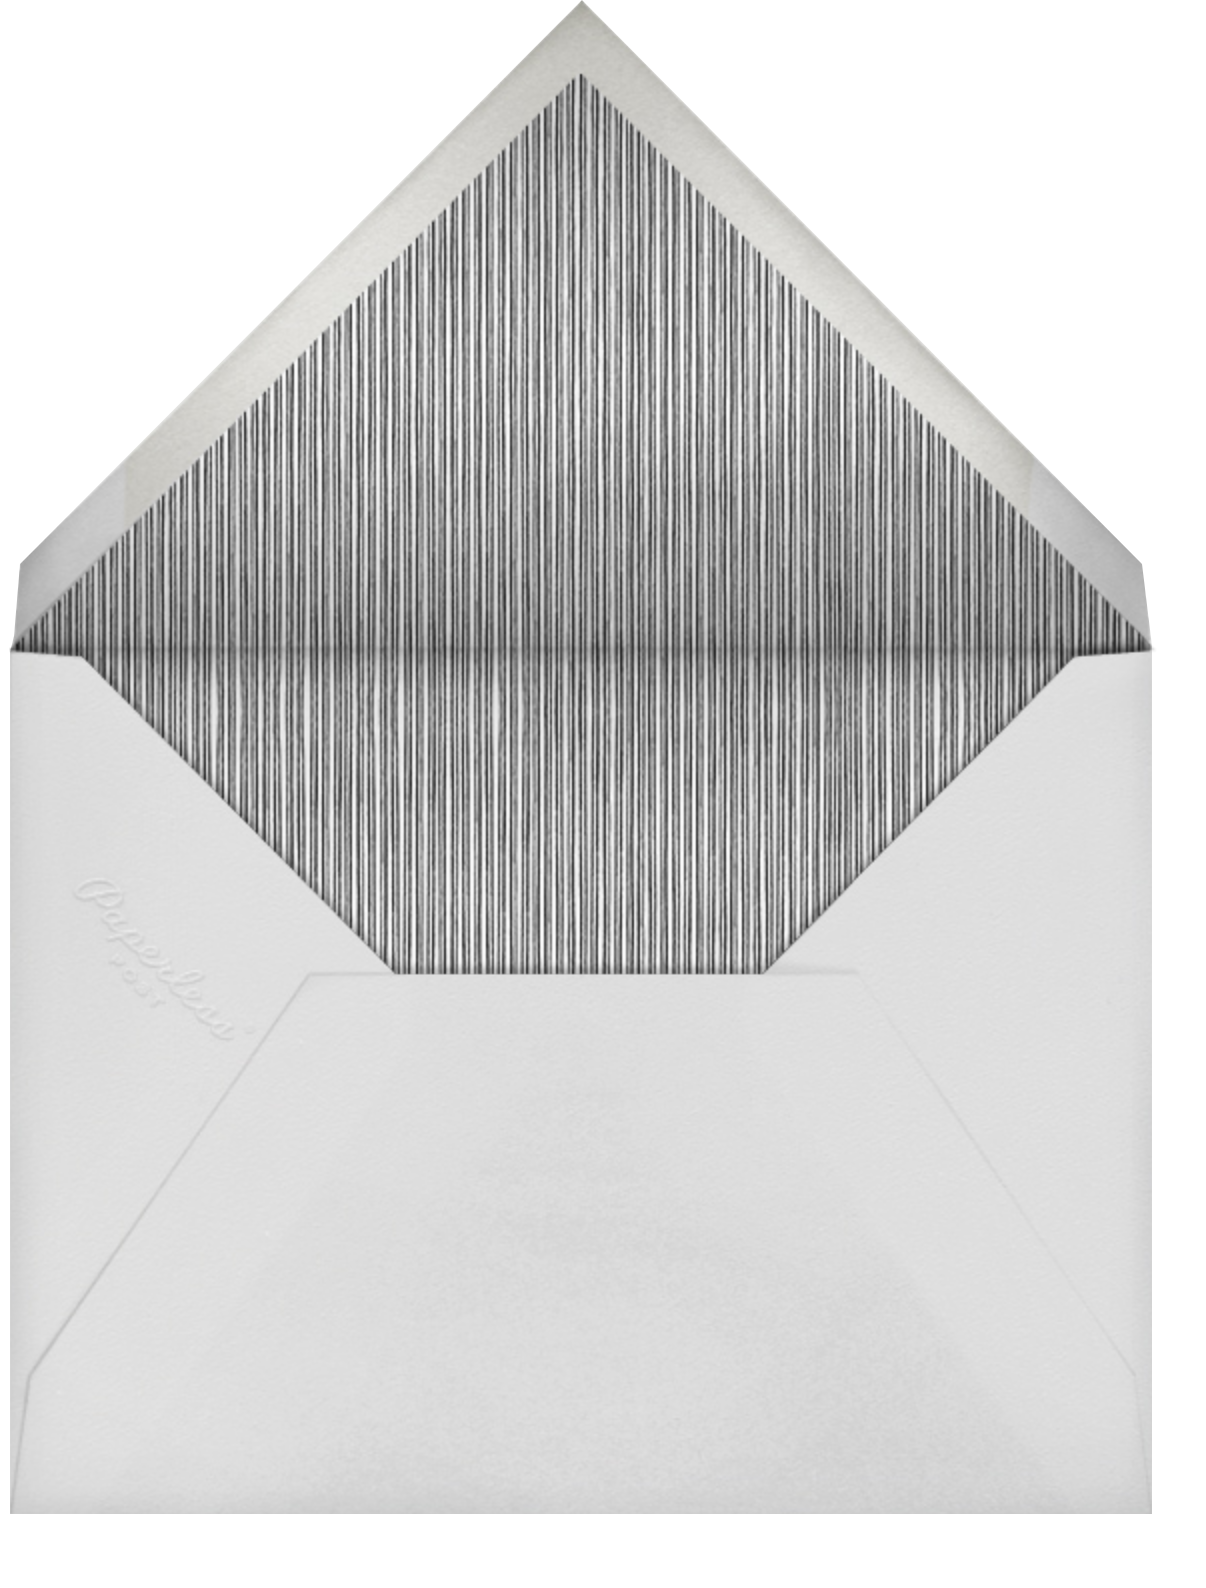 Snowflakes - Teal - Paperless Post - Envelope